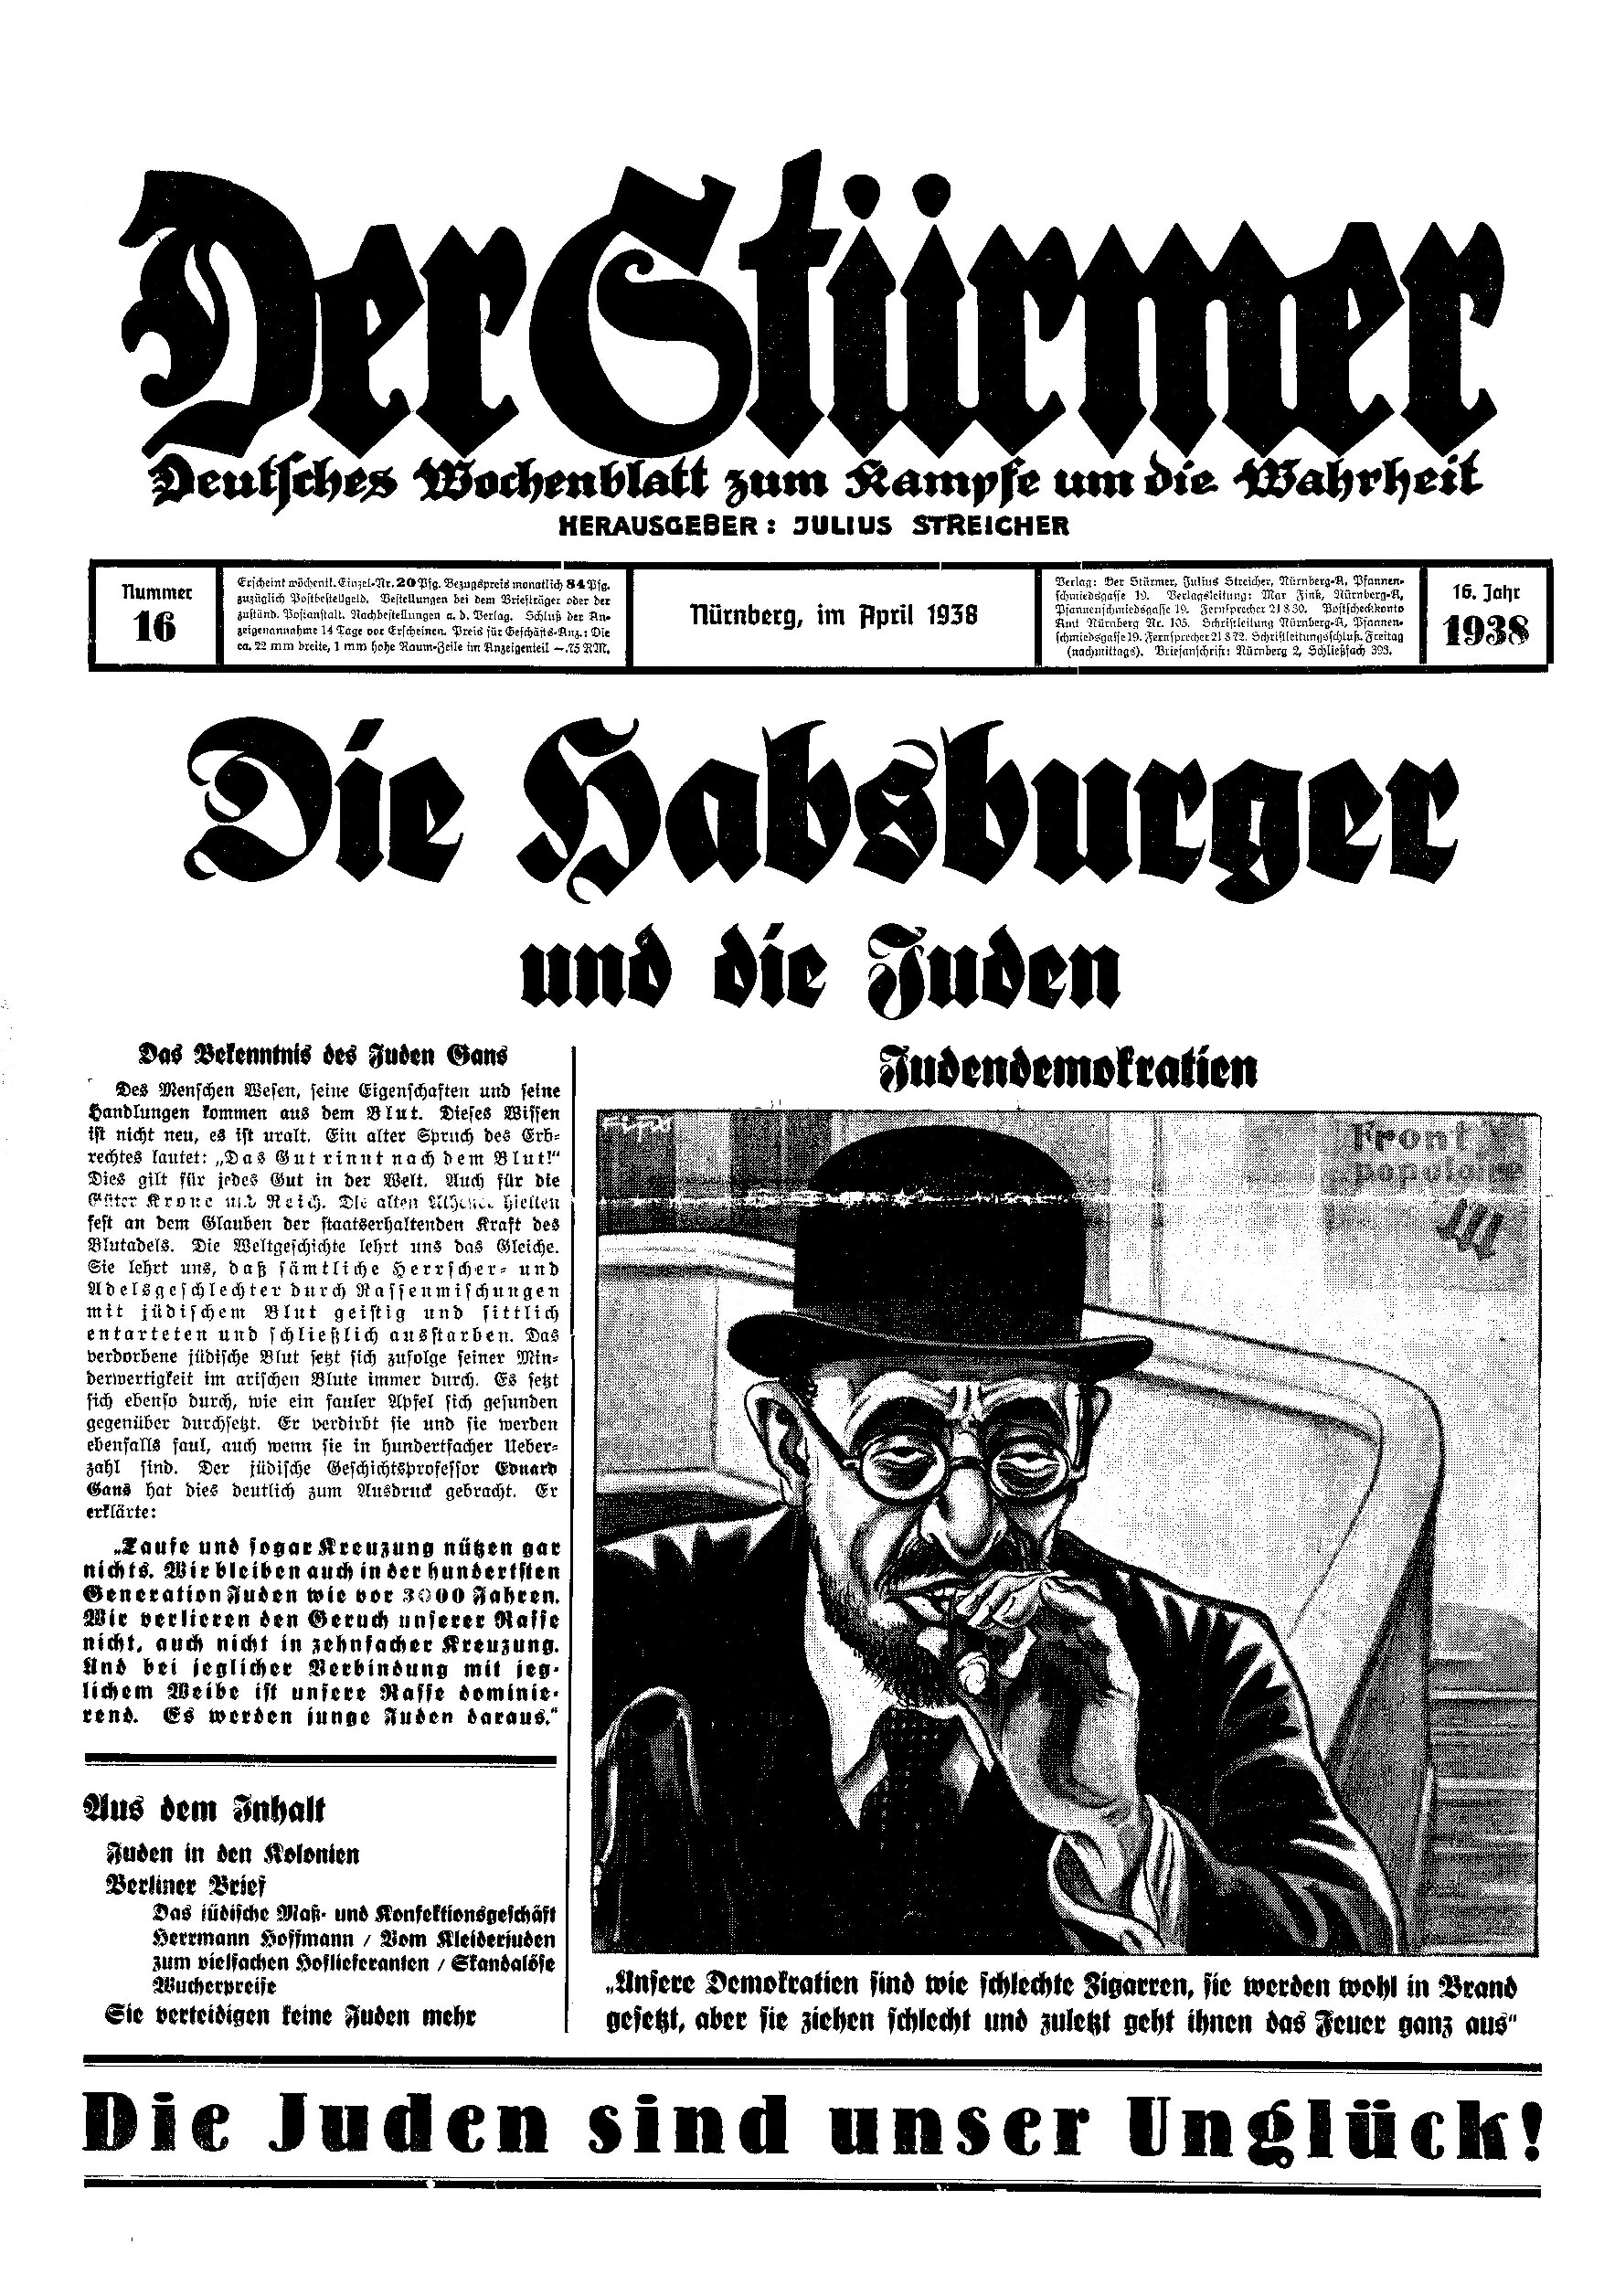 Der Stürmer - 1938 Nr. 16 - Die Habsburger und die Juden